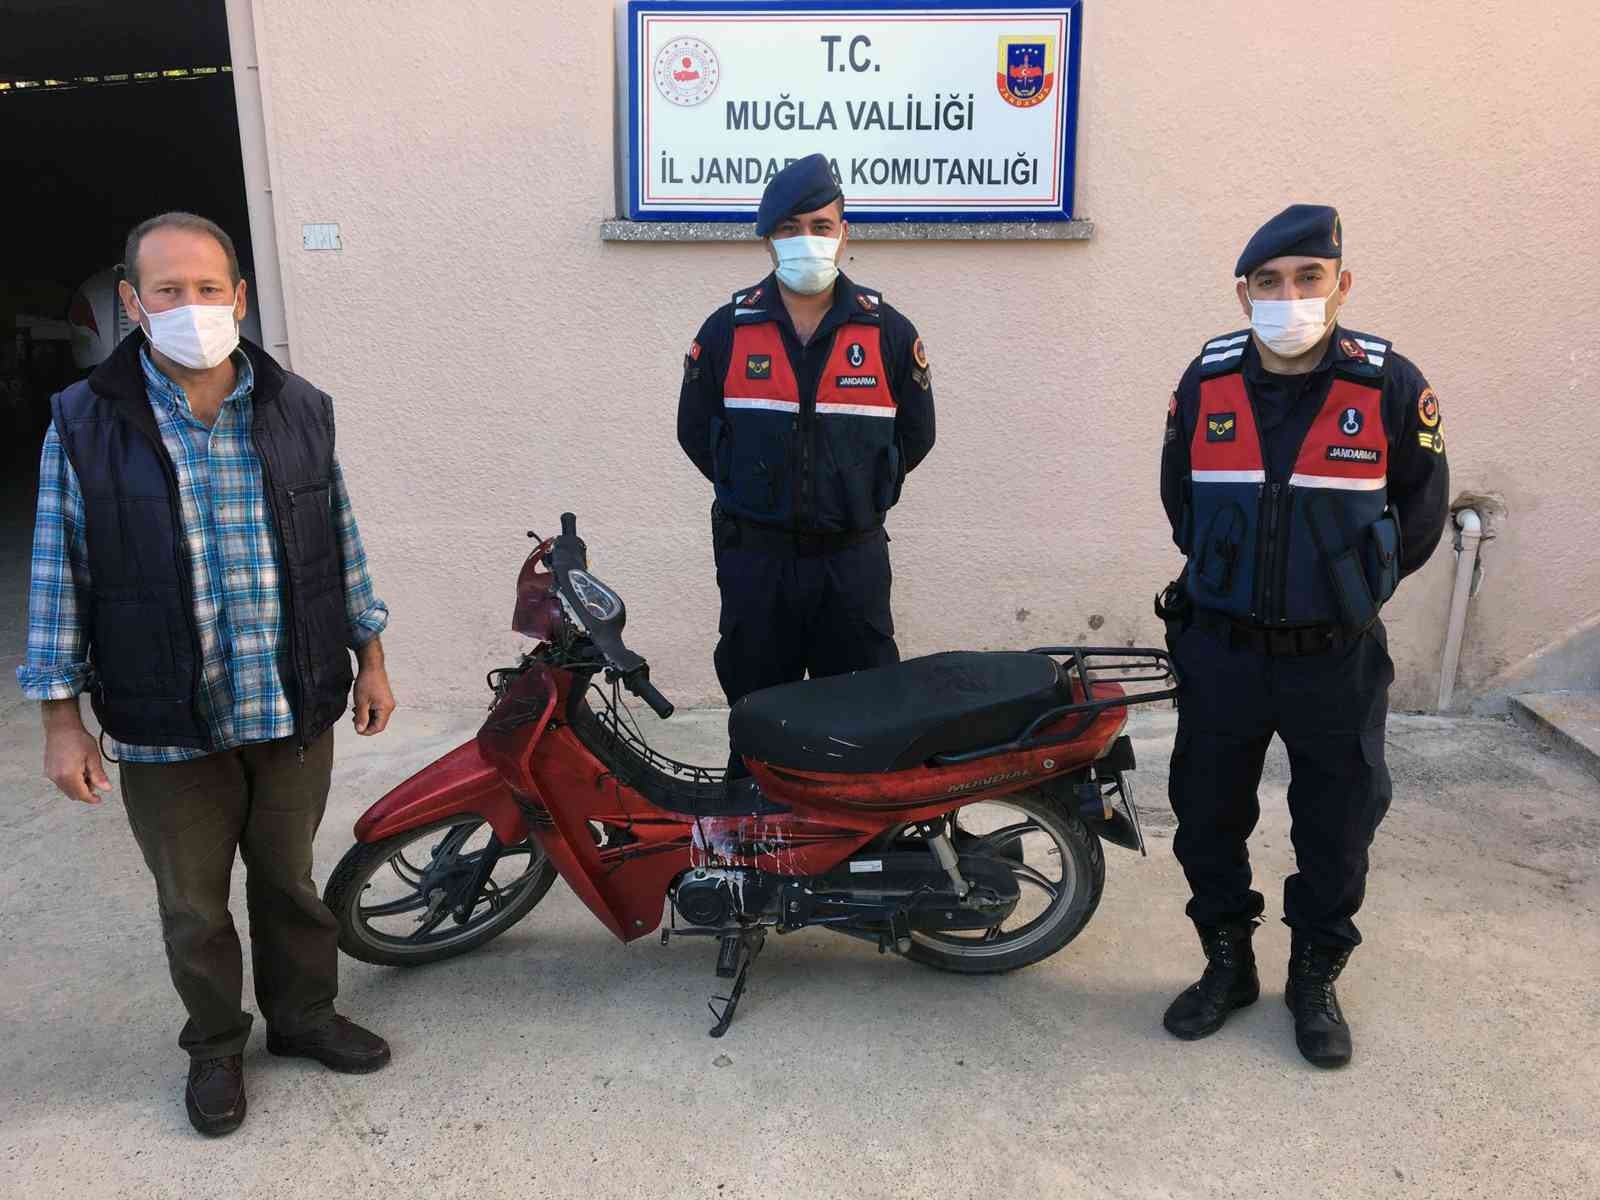 Çalınan motosikleti Jandarma buldu #mugla